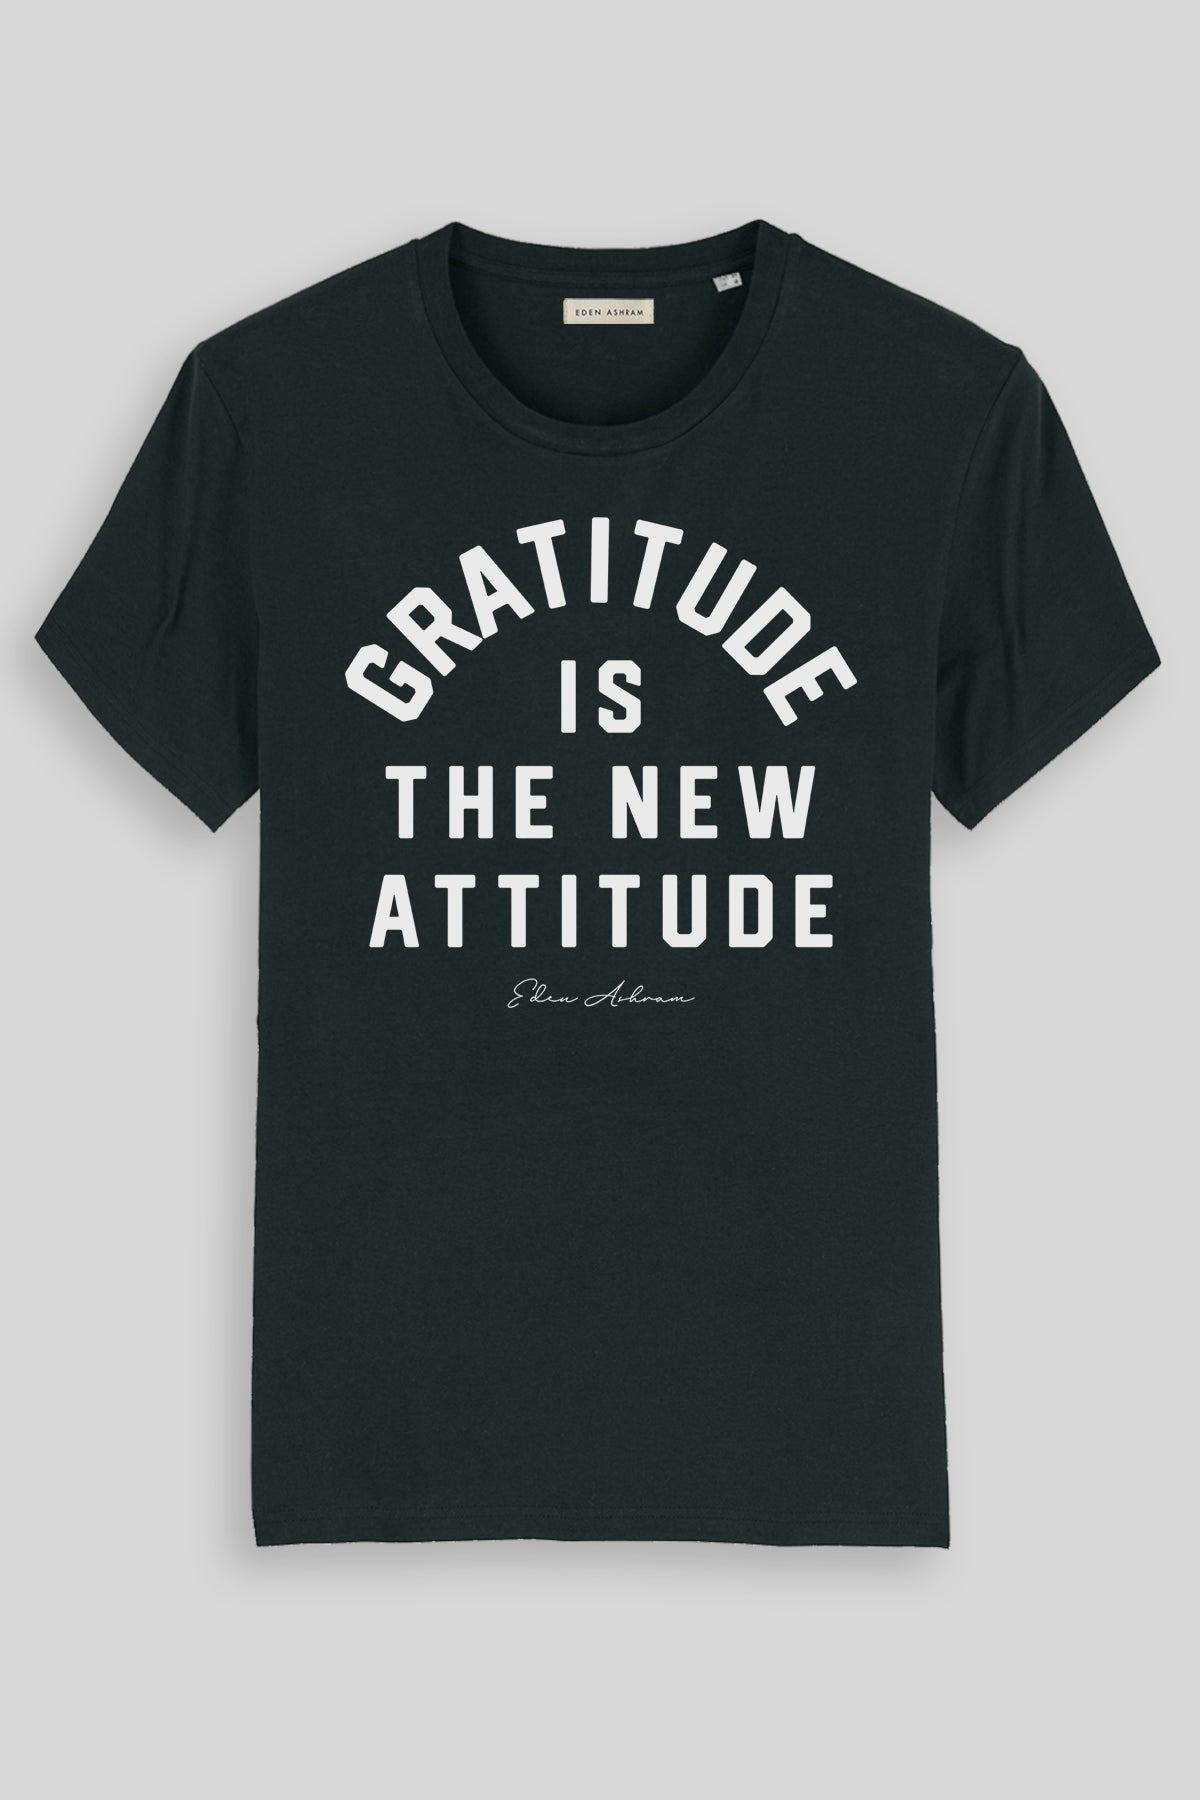 EDEN ASHRAM Gratitude is the new attitude - Premium Classic T-Shirt Black